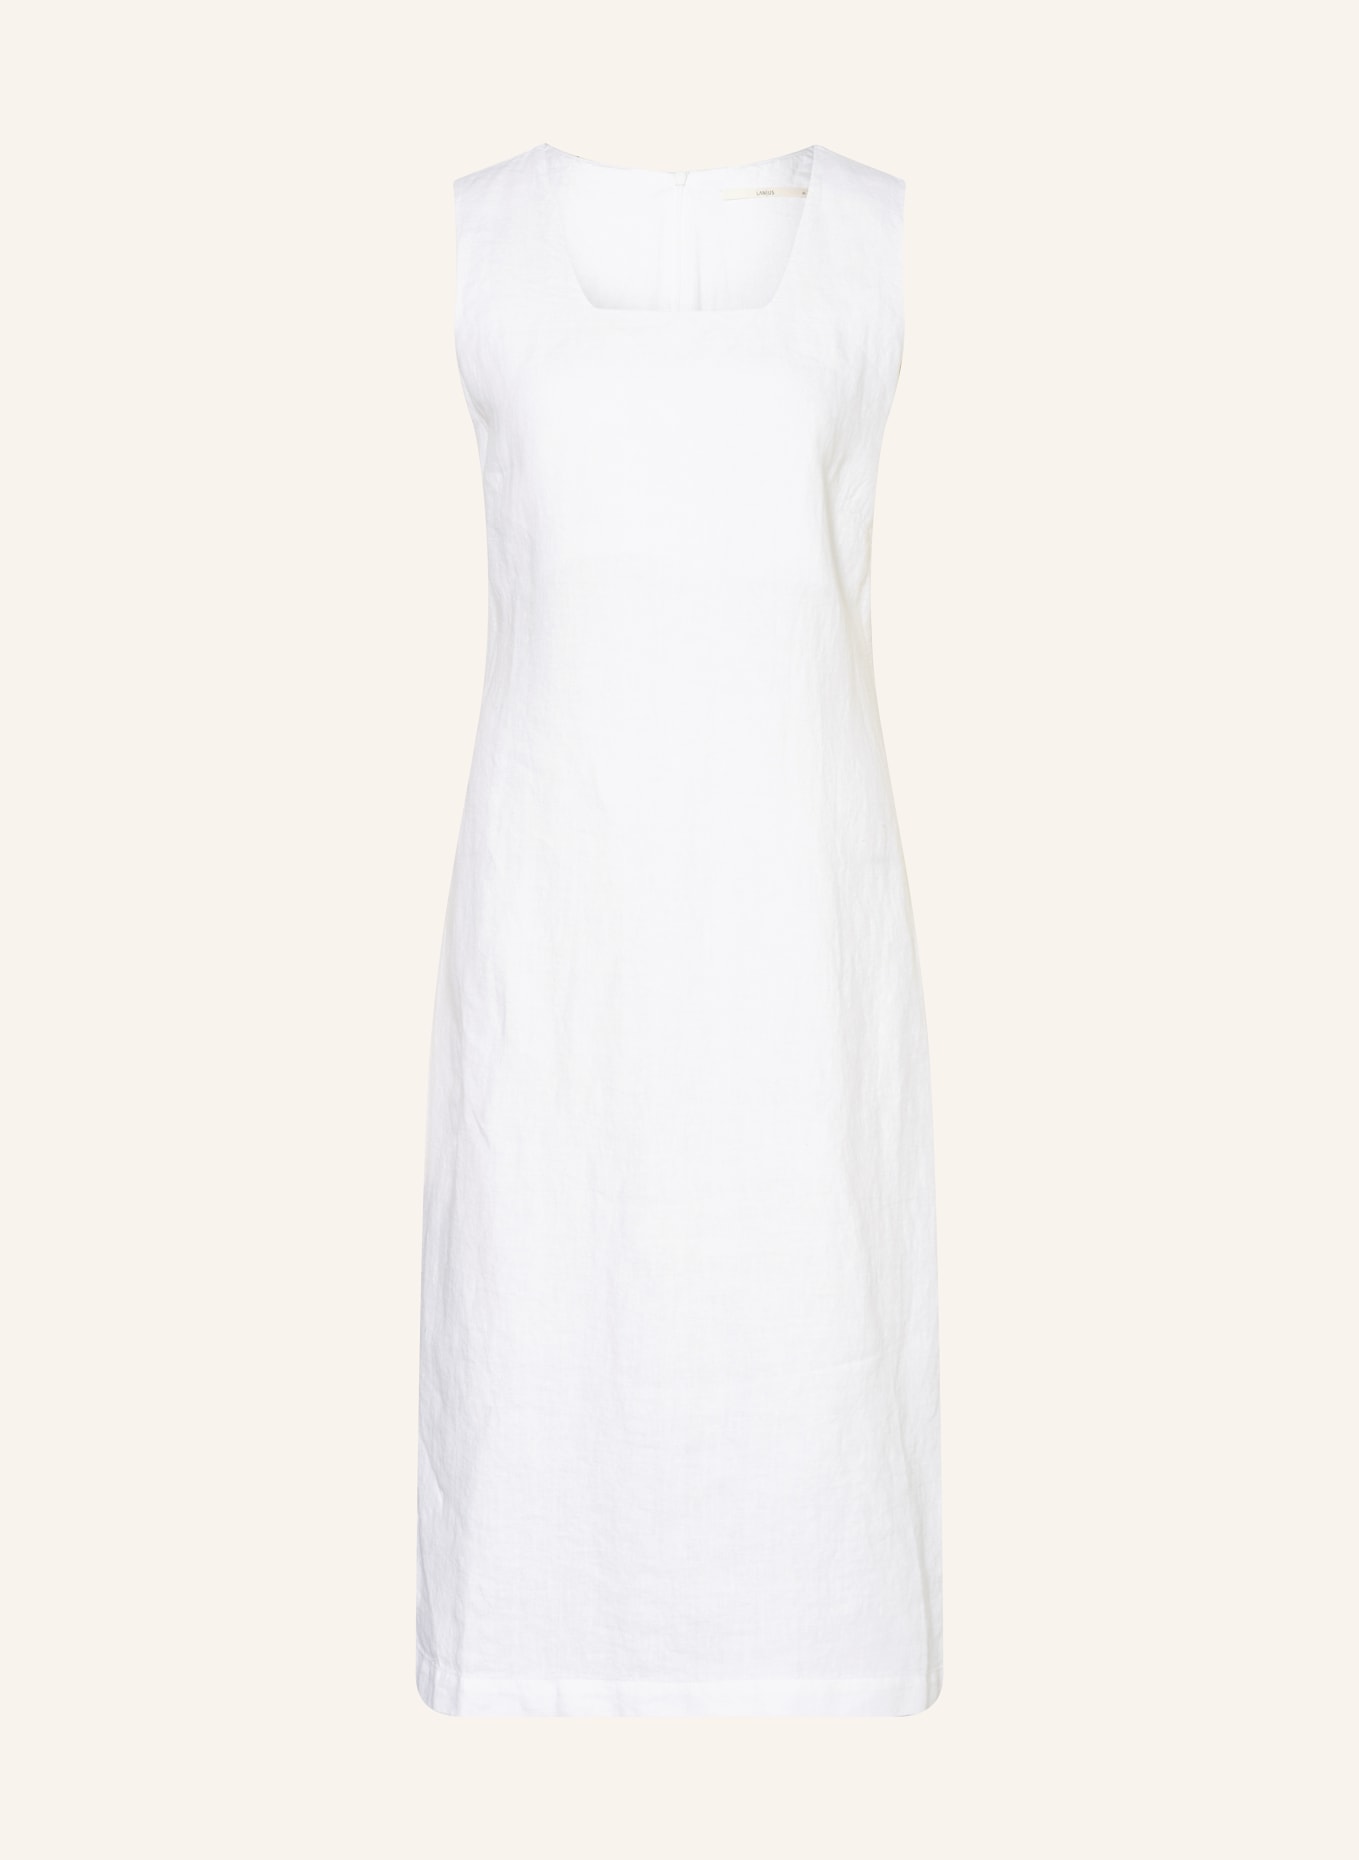 LANIUS Linen dress, Color: WHITE (Image 1)